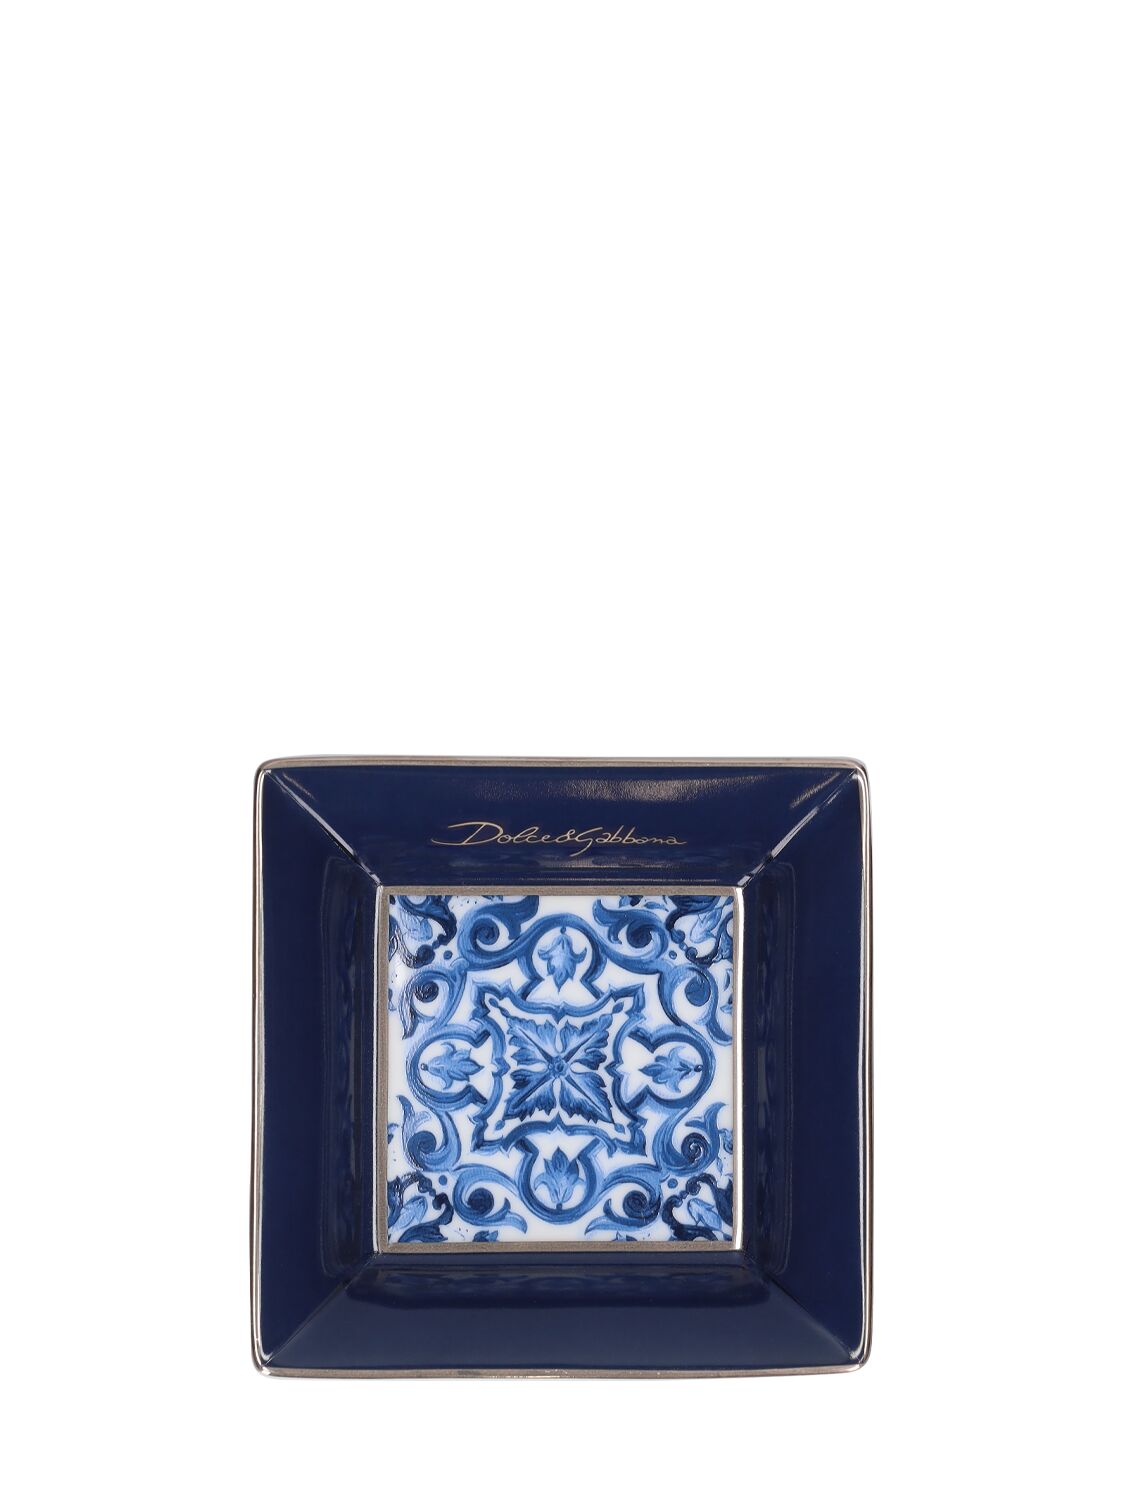 Dolce & Gabbana Blu Mediterraneo Square Decorative Plate In Blue